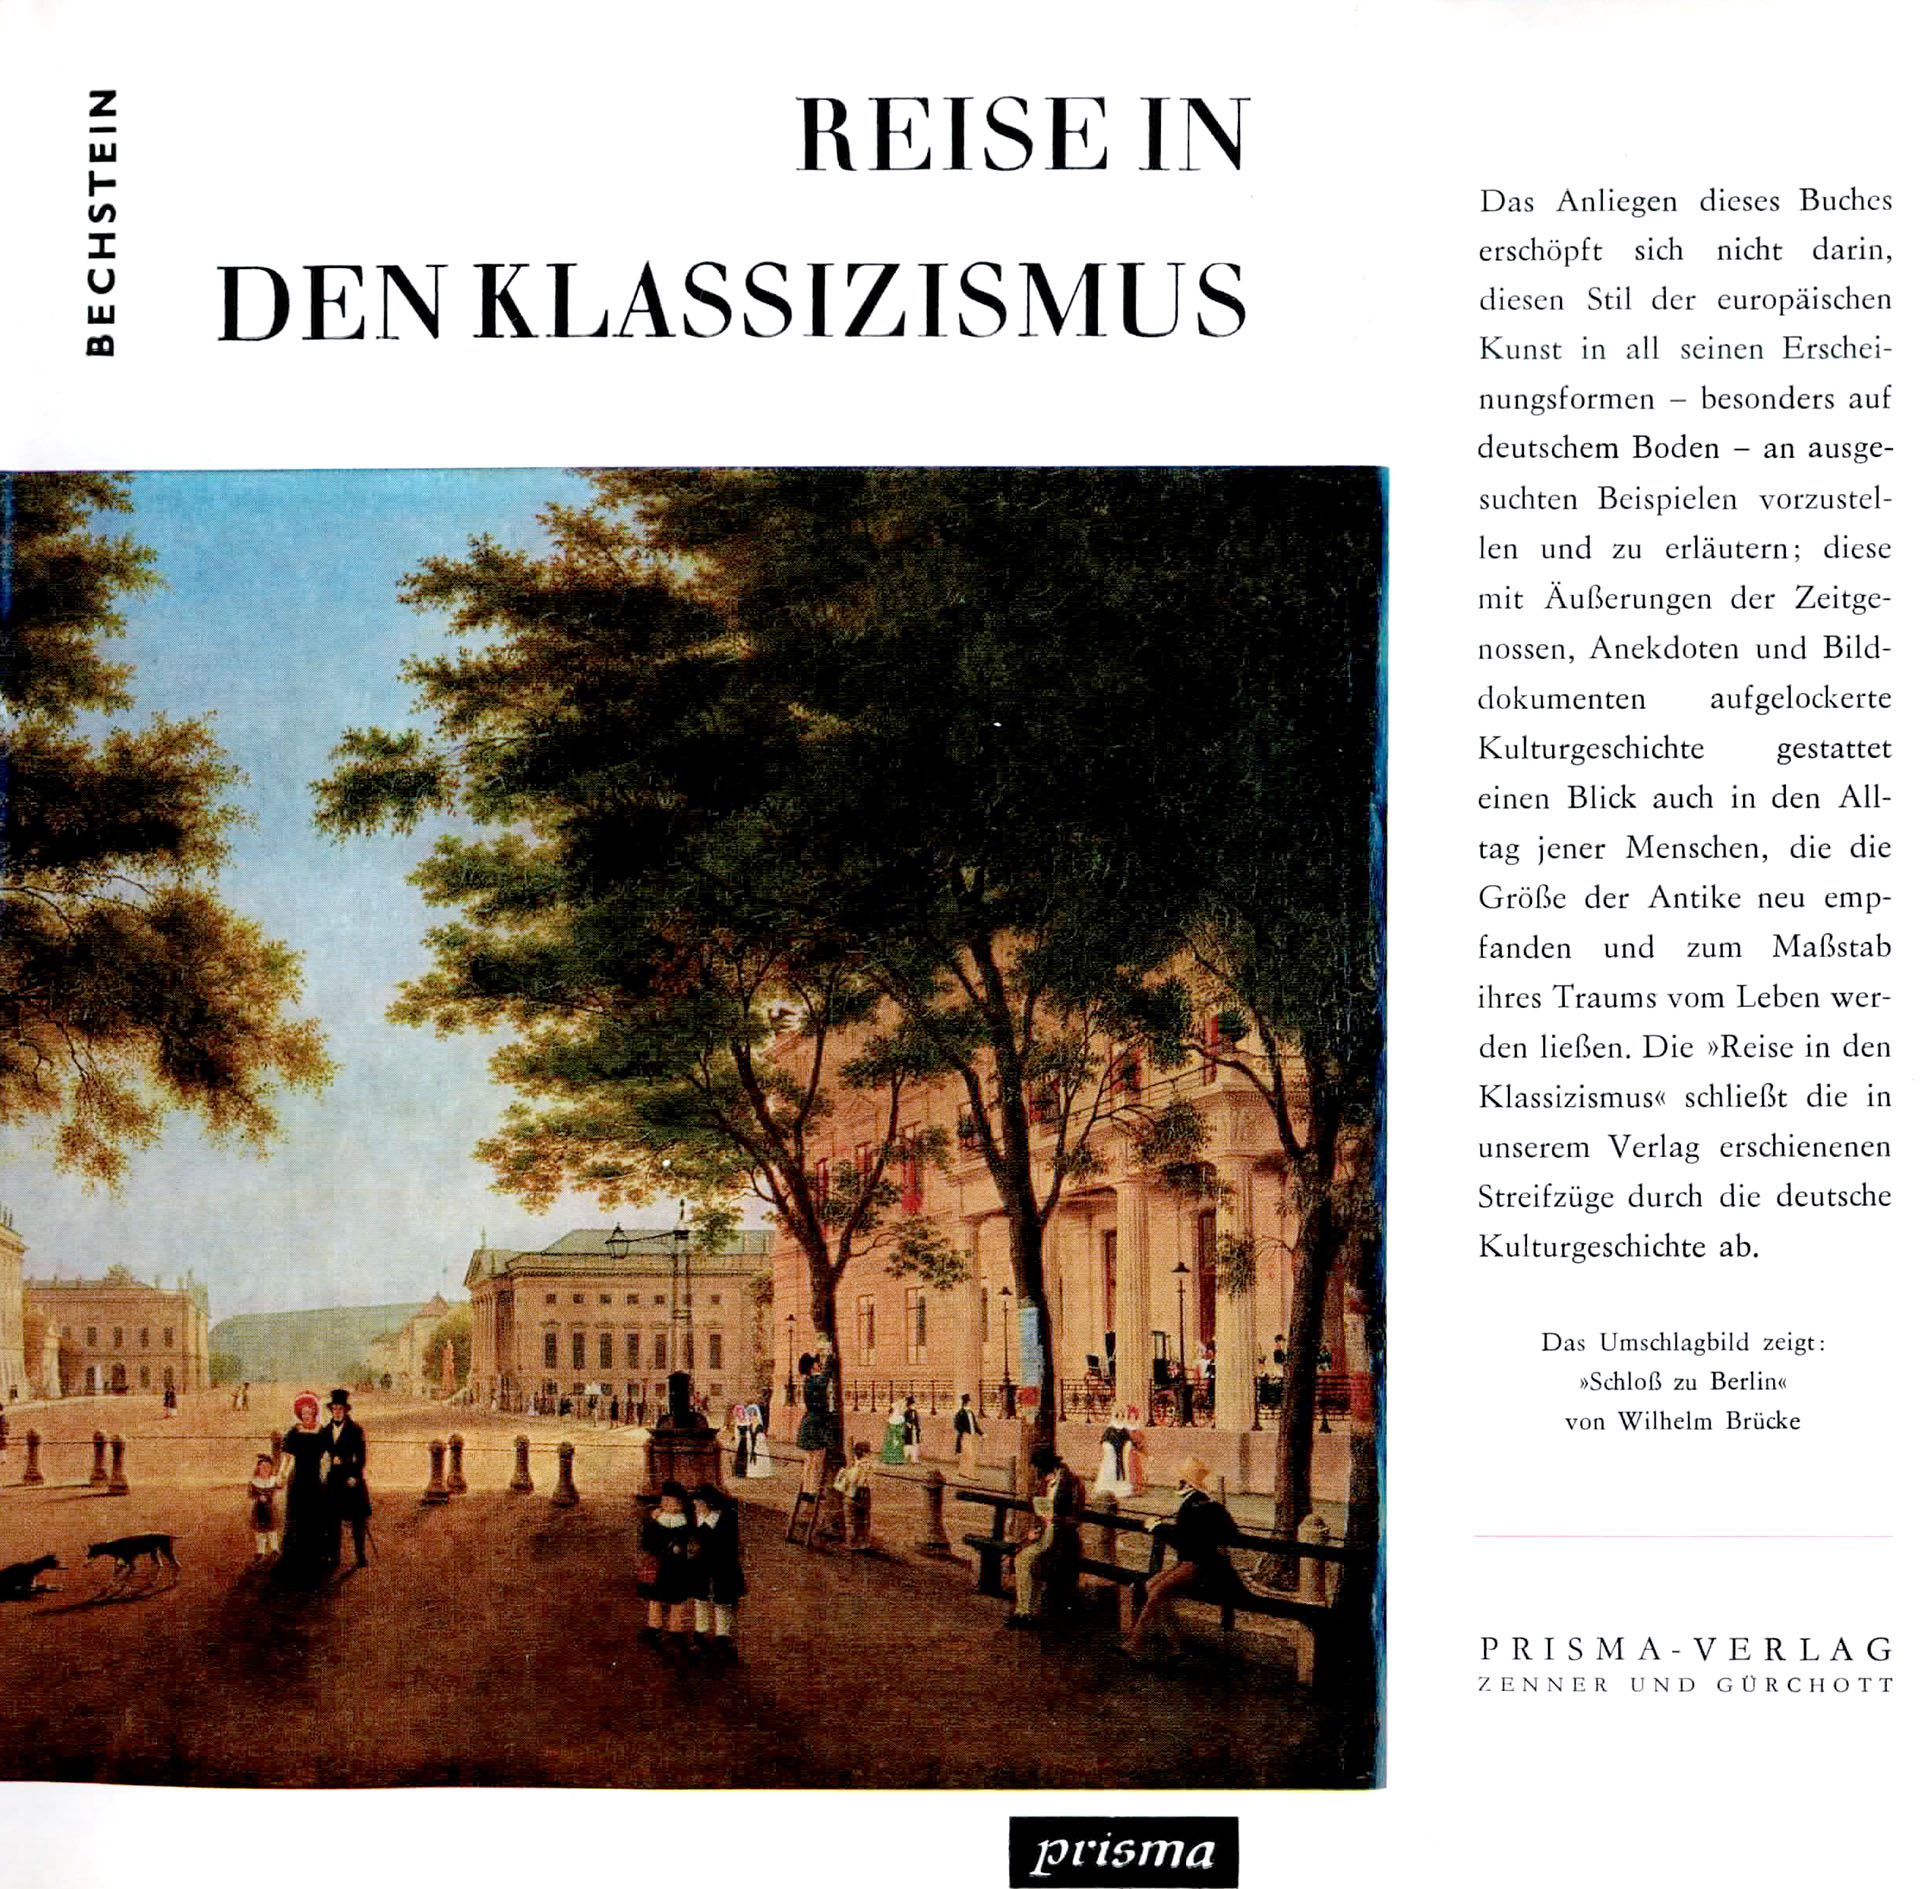 Reise in den Klassizismus - Bechstein, Hanns